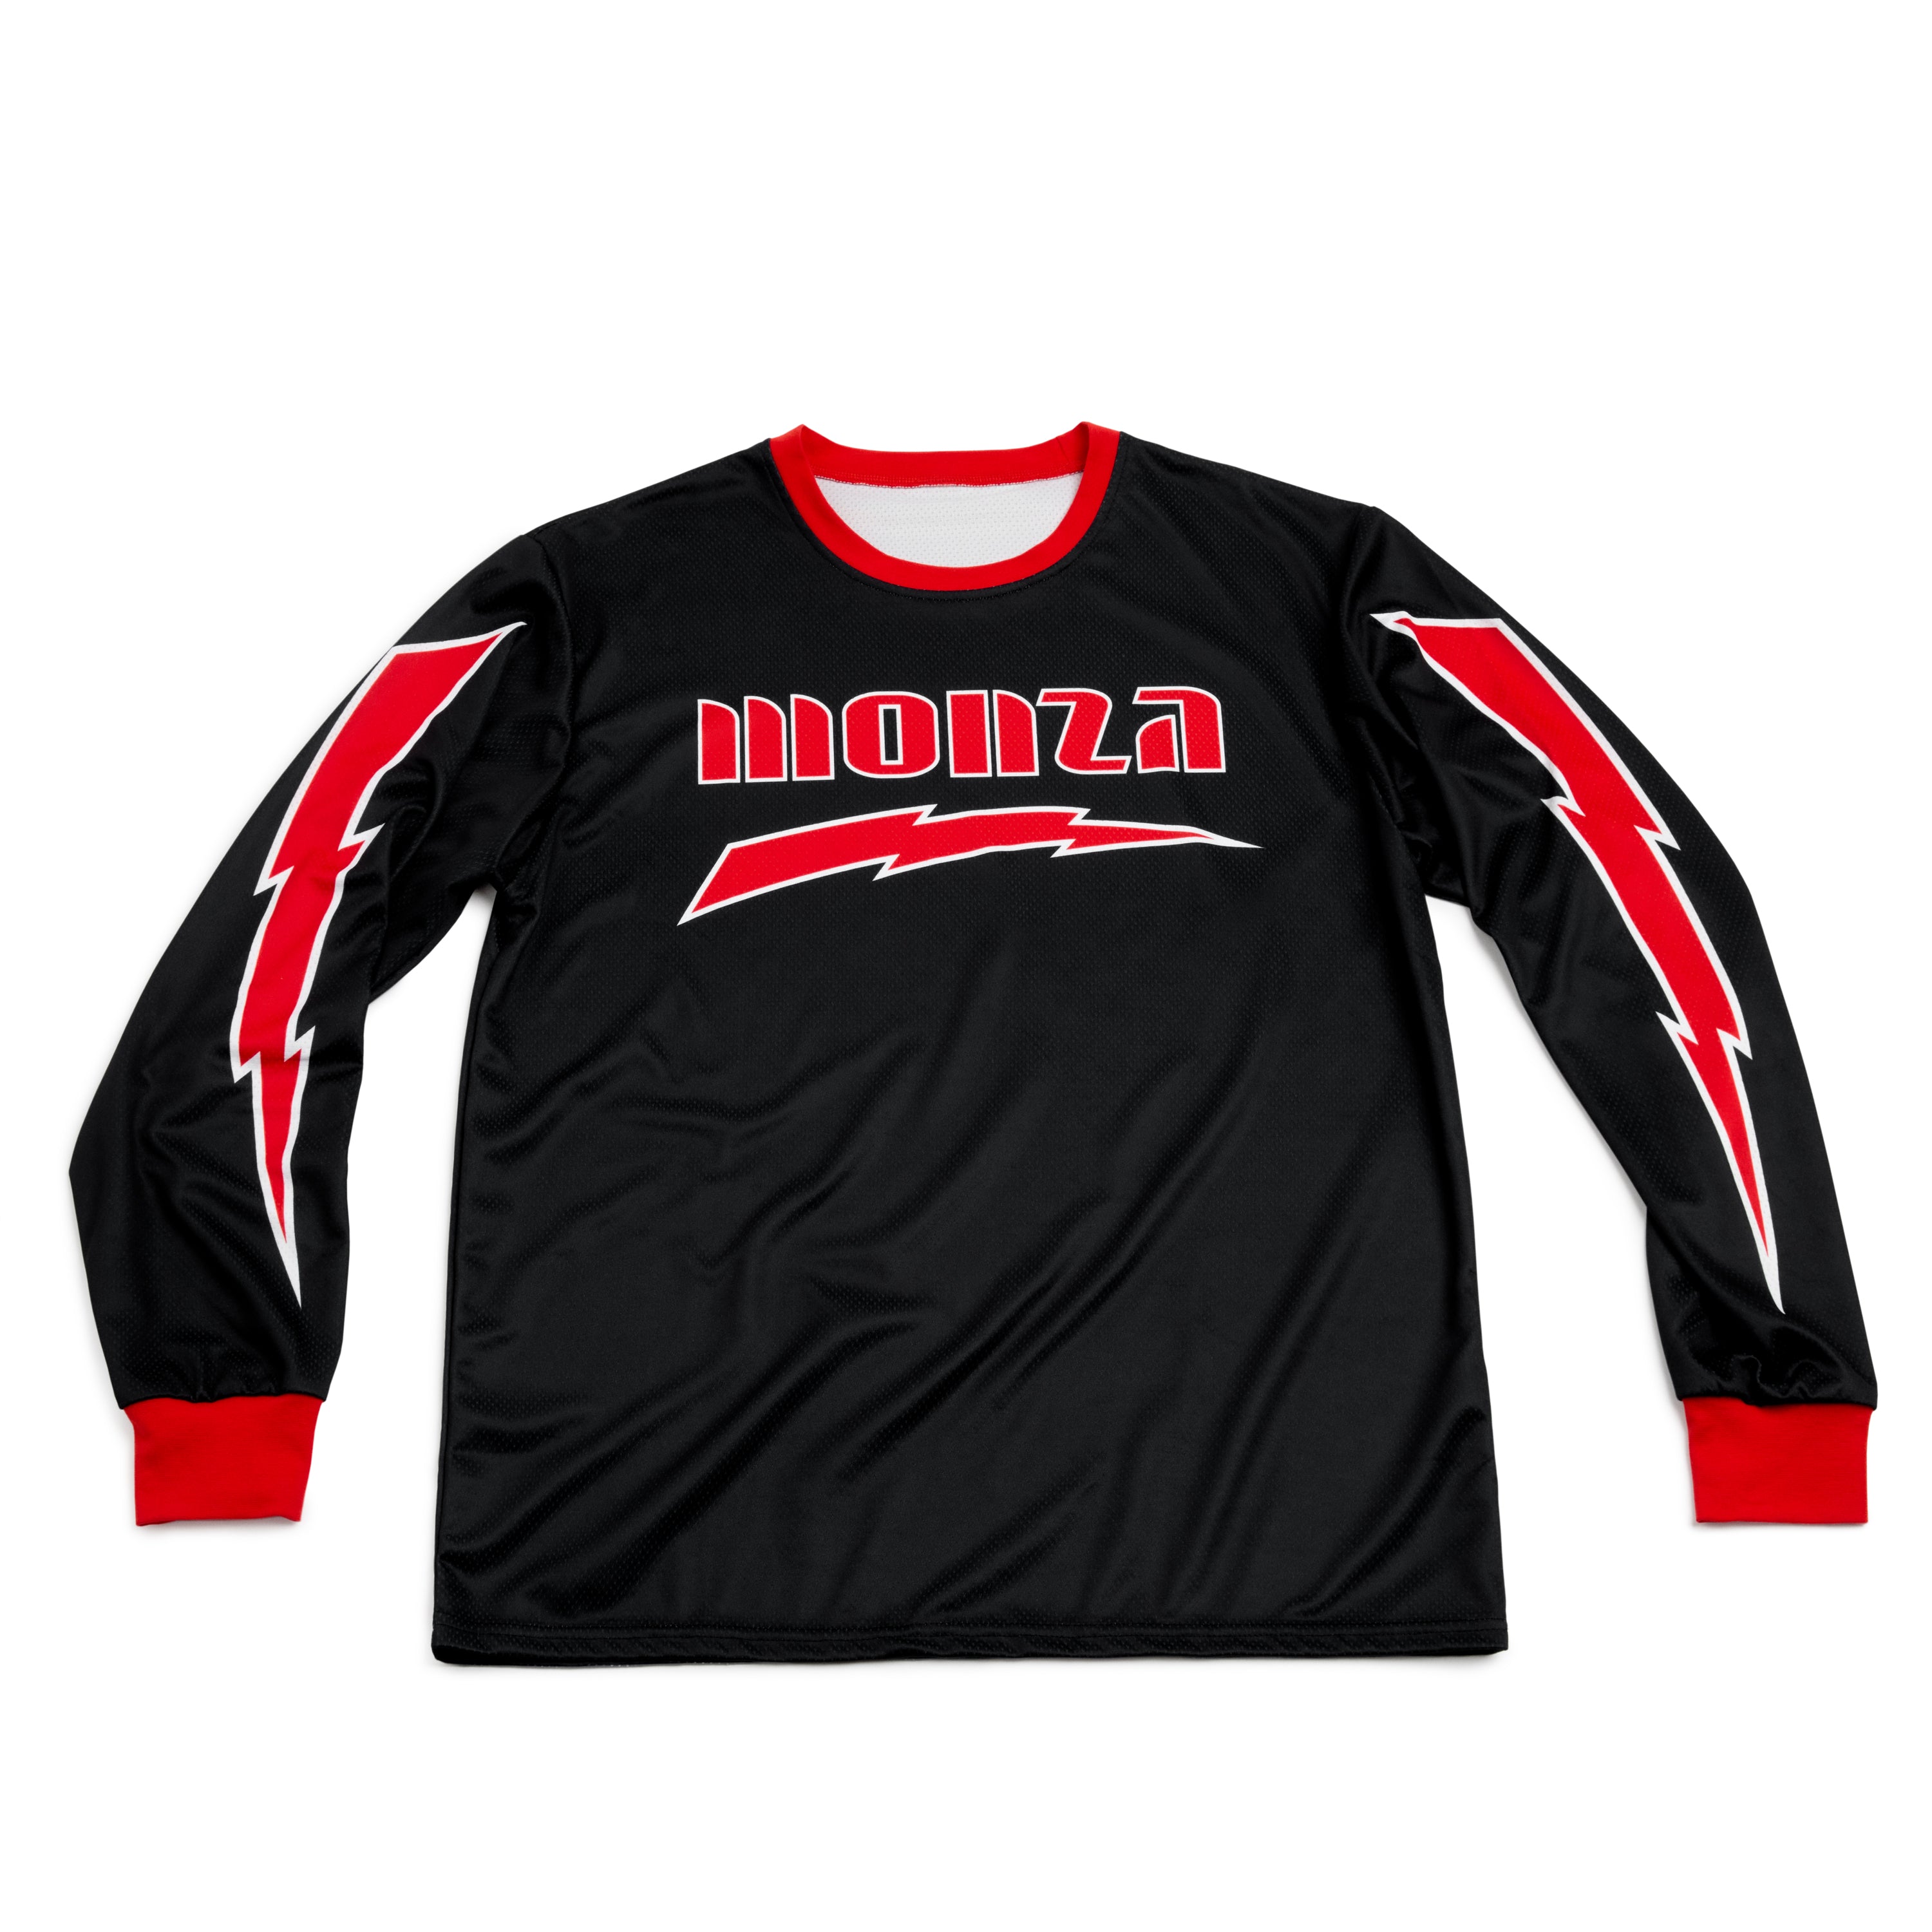 BMX Jersey - Monza BMX Racing Jersey